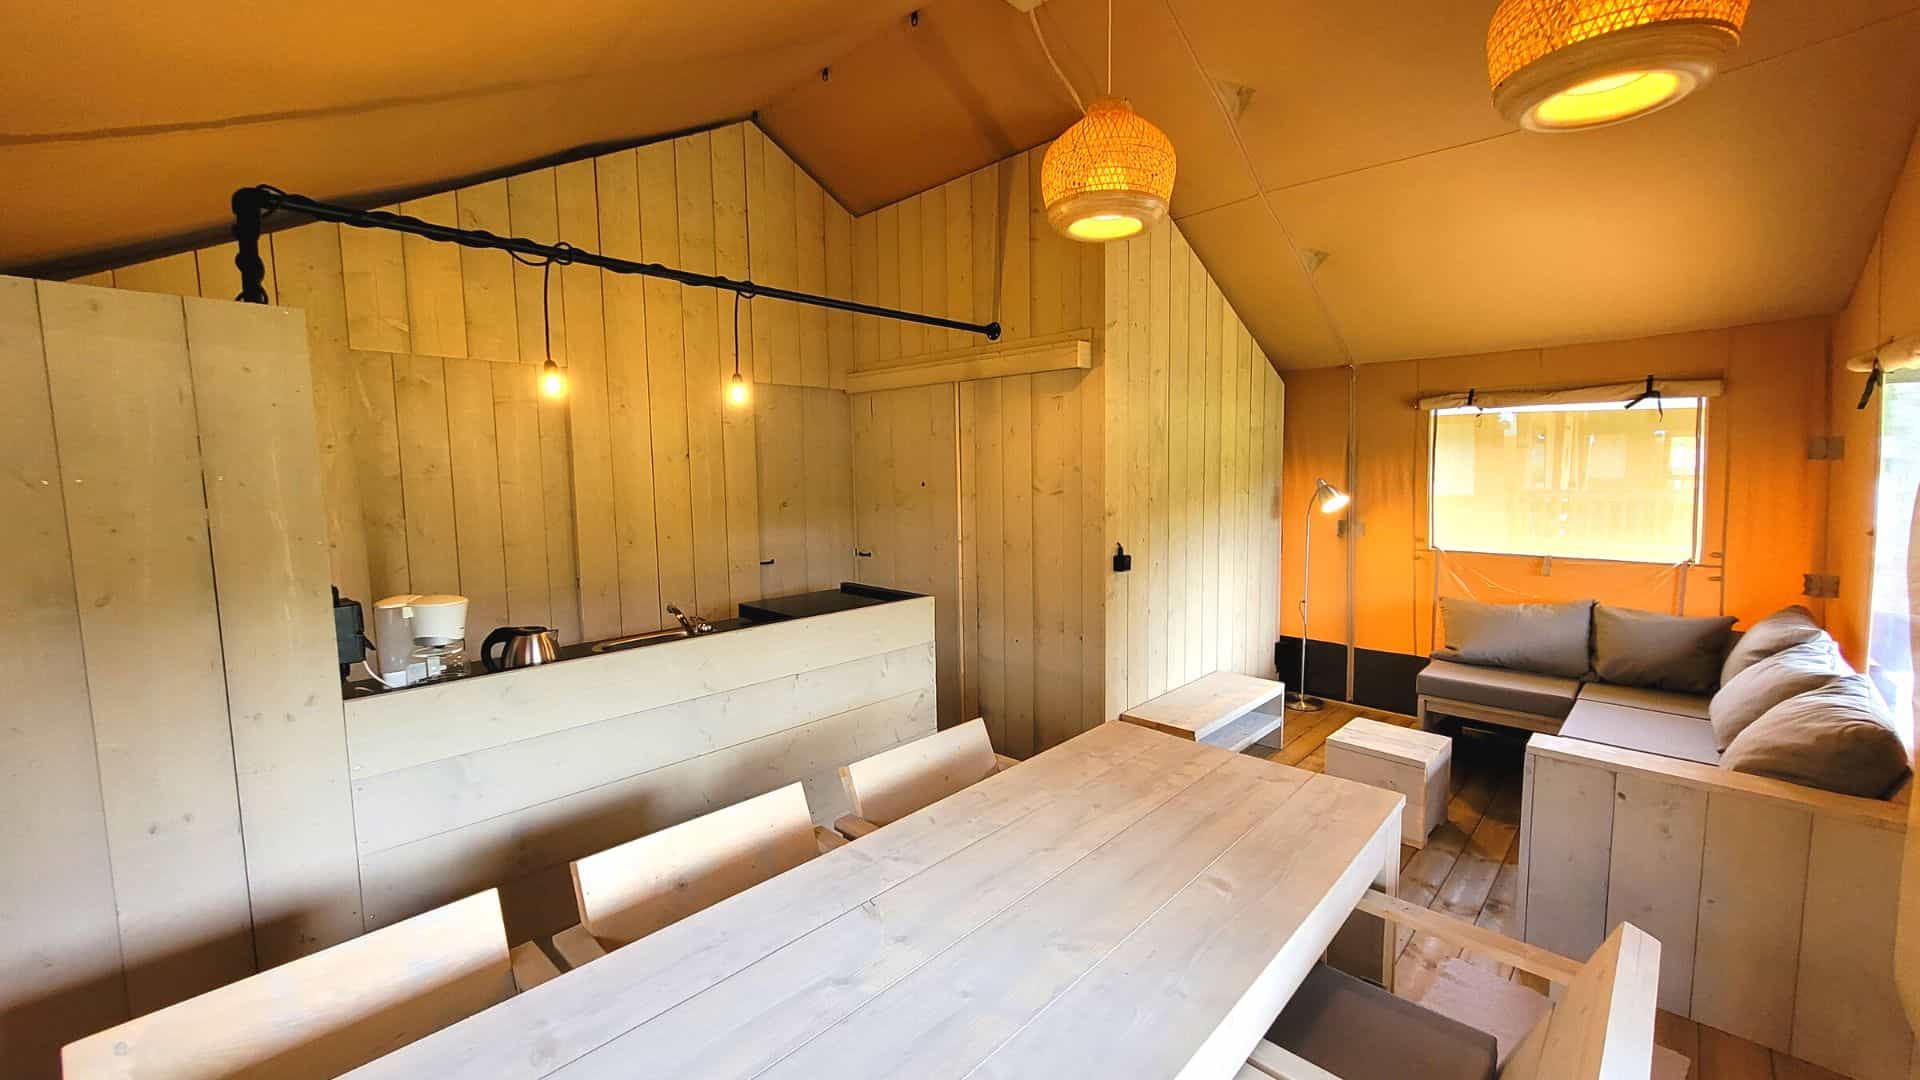 Salle à manger dans la tente safari pour 6 personnes dans un camping en Ardenne belge